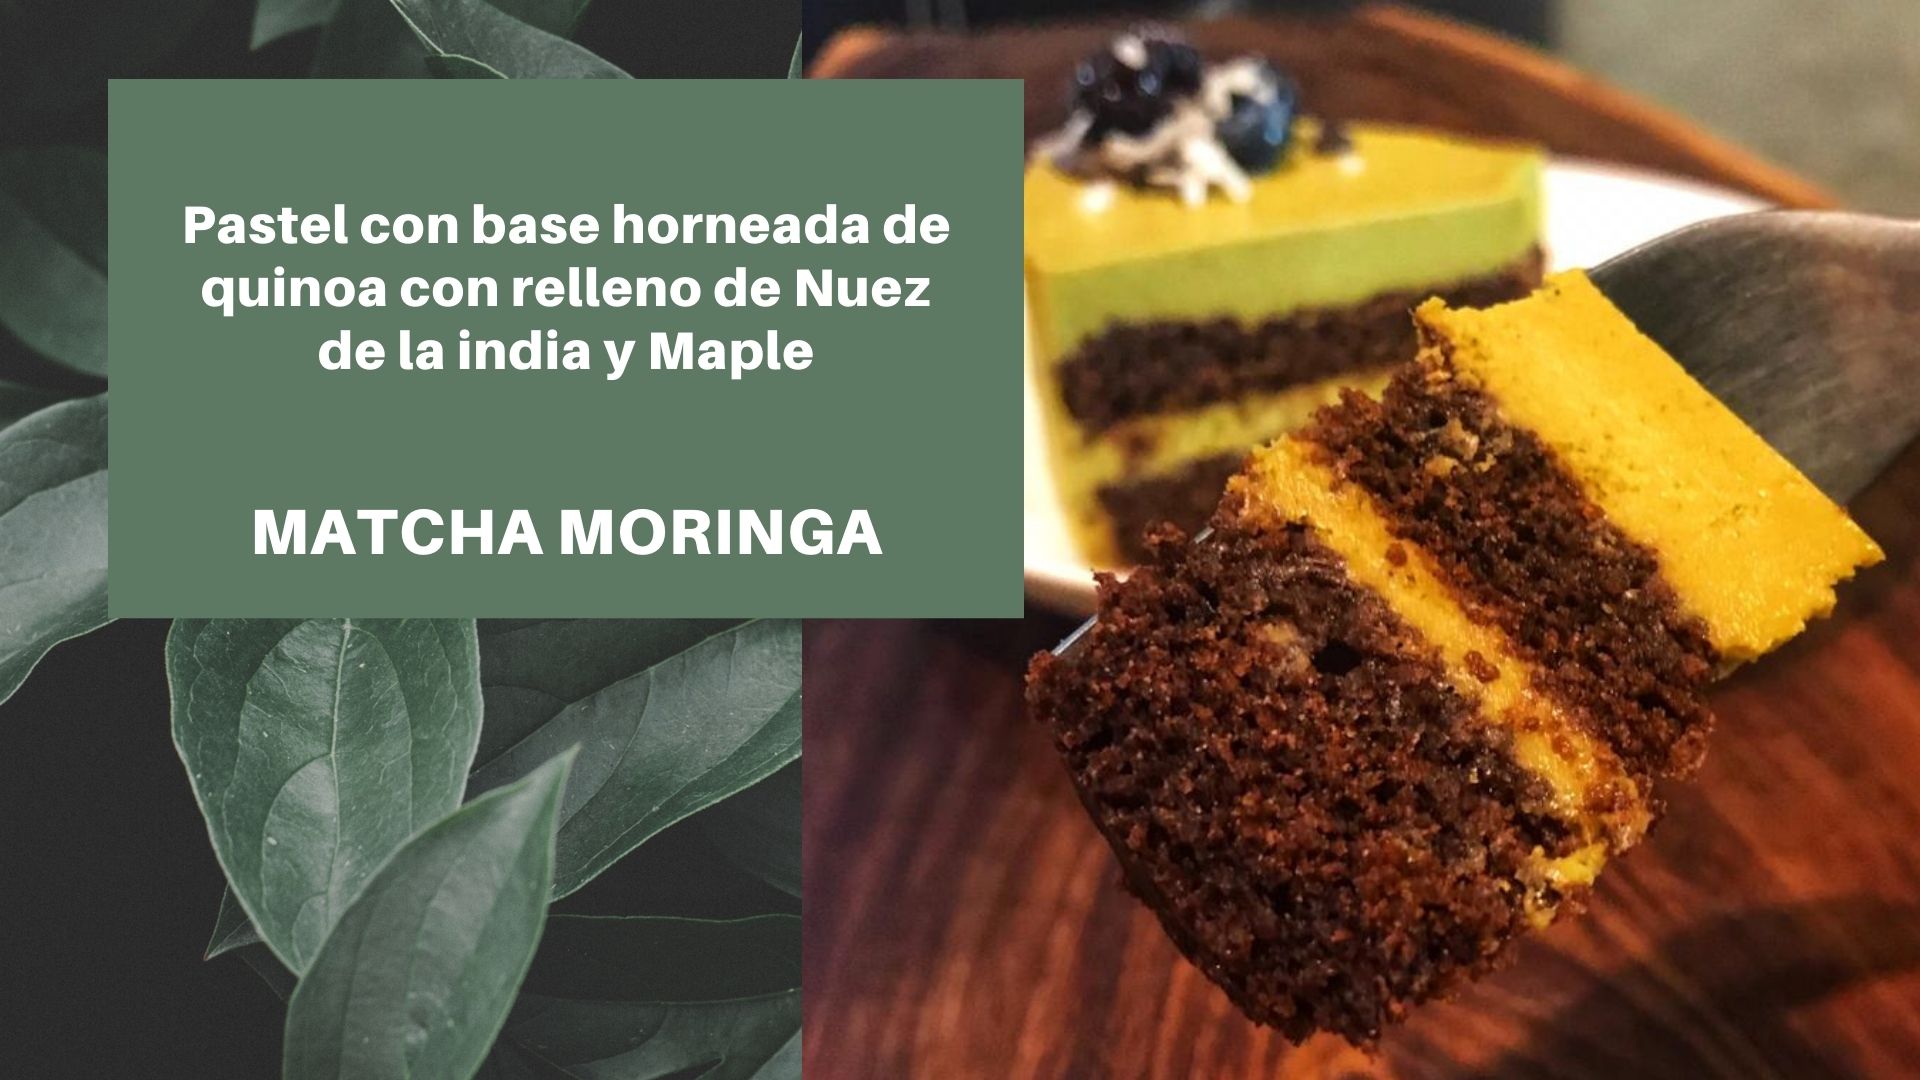 Pastel de Nuez de la India con Matcha y Moringa. en canasta en casa